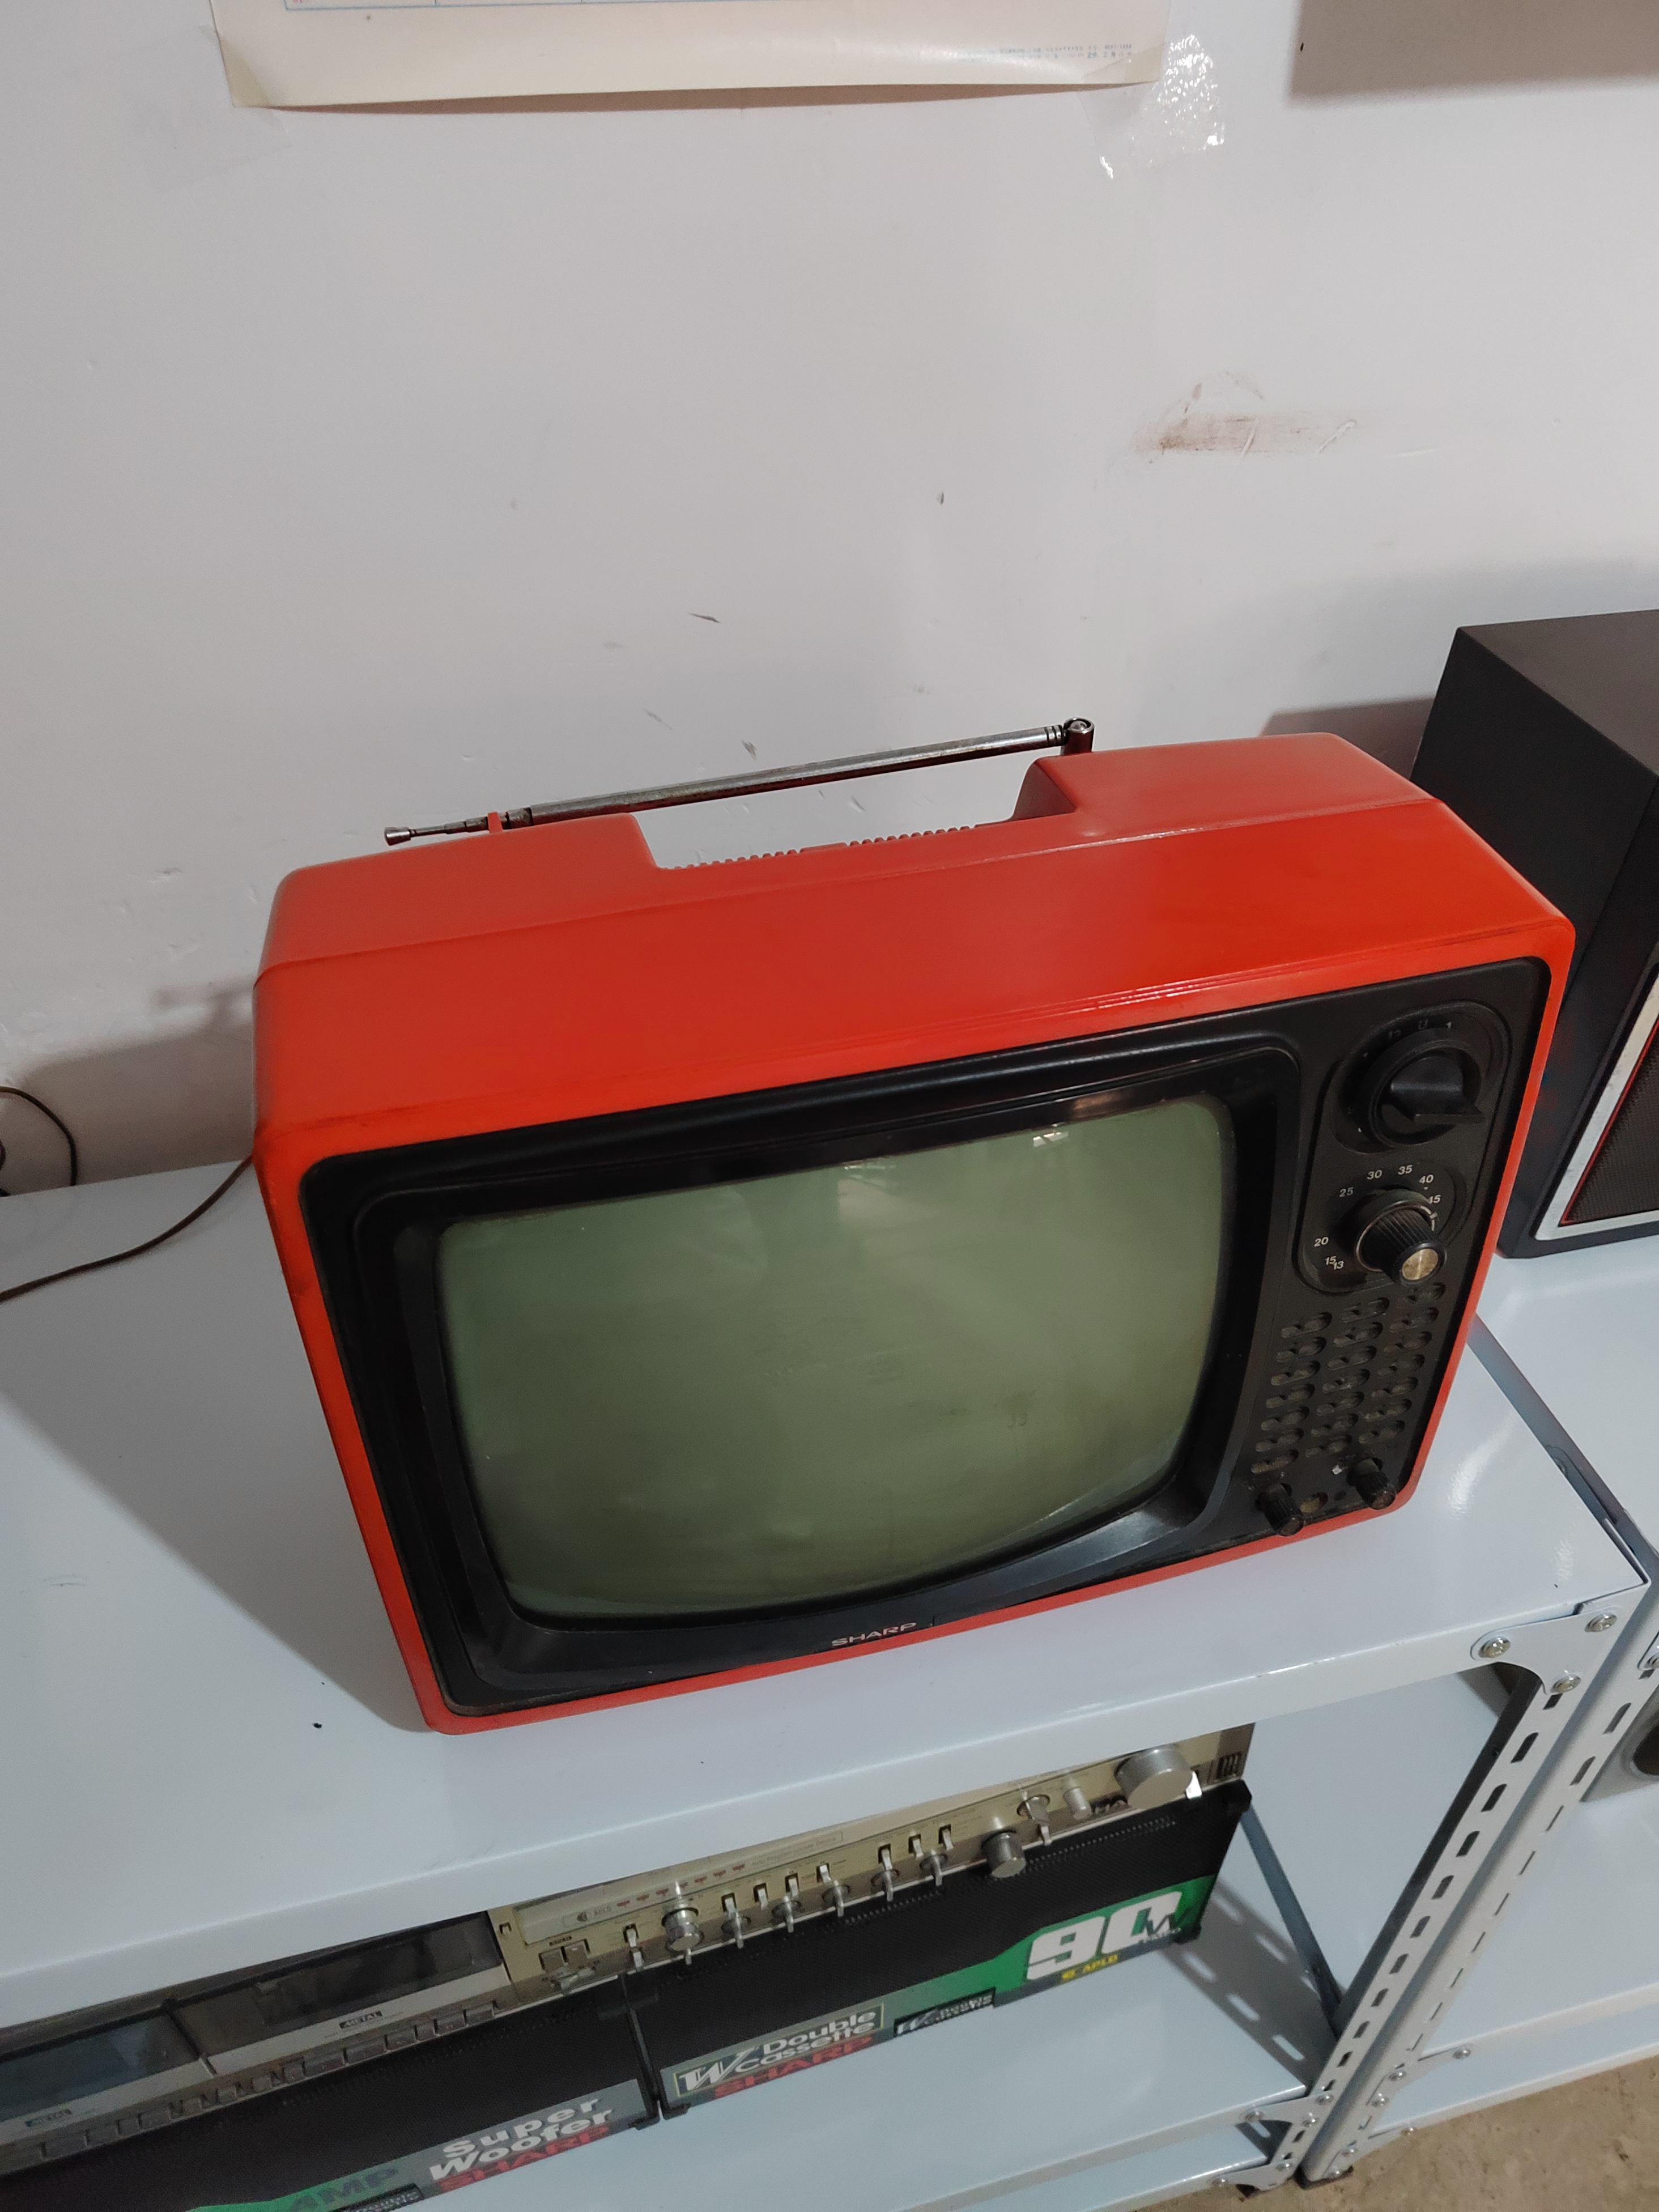 夏普黑白电视机,品相保存好正常使用,有喜欢的吗?